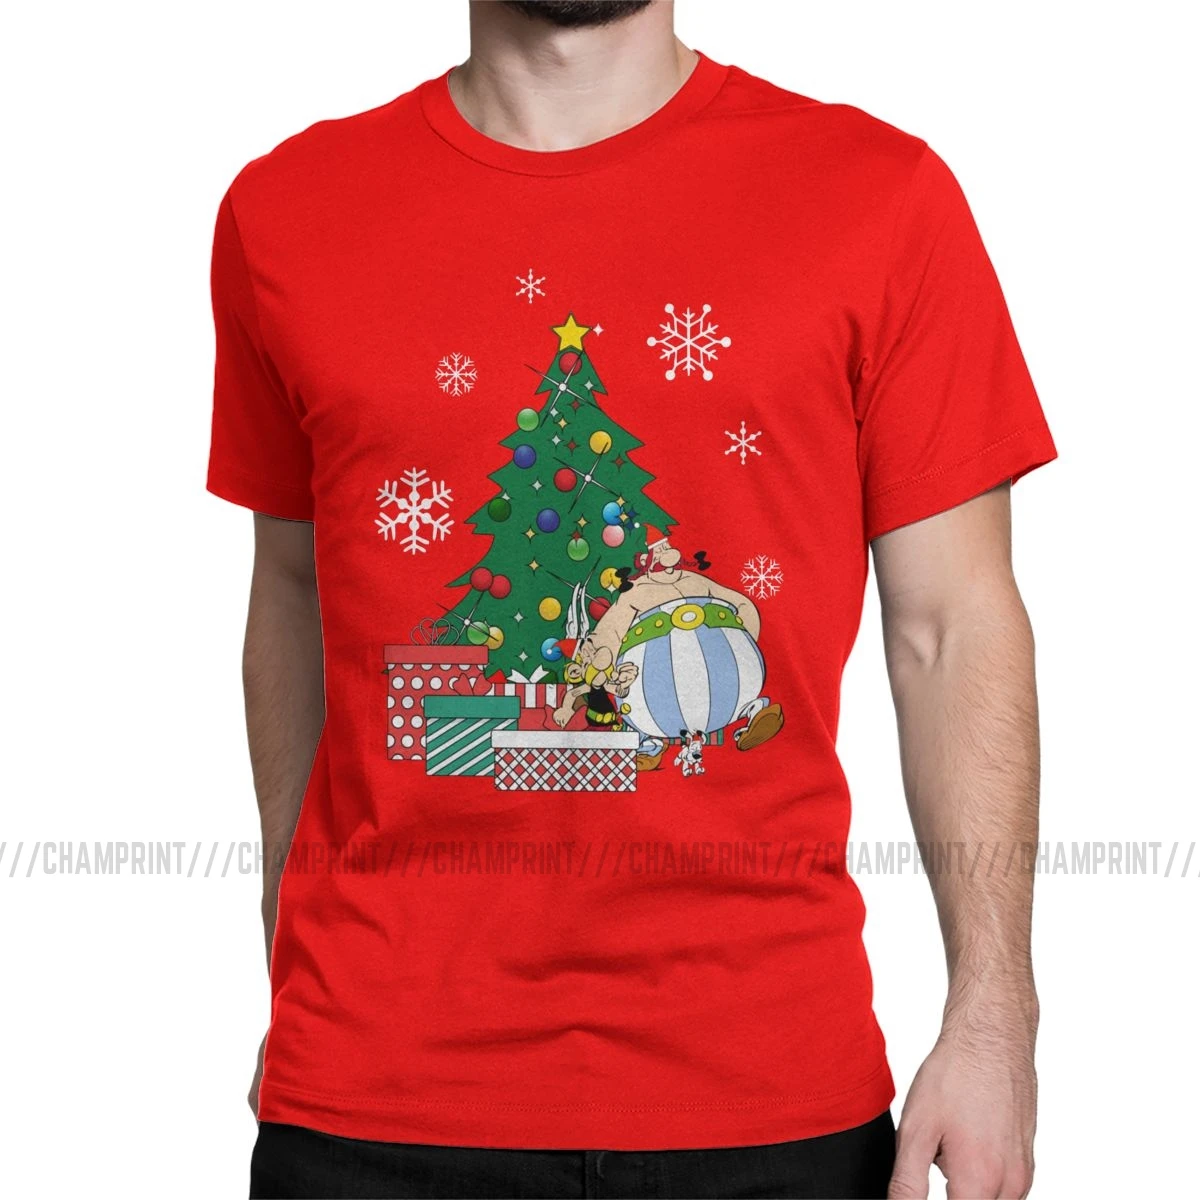 Мужская футболка Астерикс и Обеликс вокруг рождественской елки, хлопковые топы Getafix Dogmatix, футболка с коротким рукавом, подарок на день рождения, футболки - Цвет: Красный